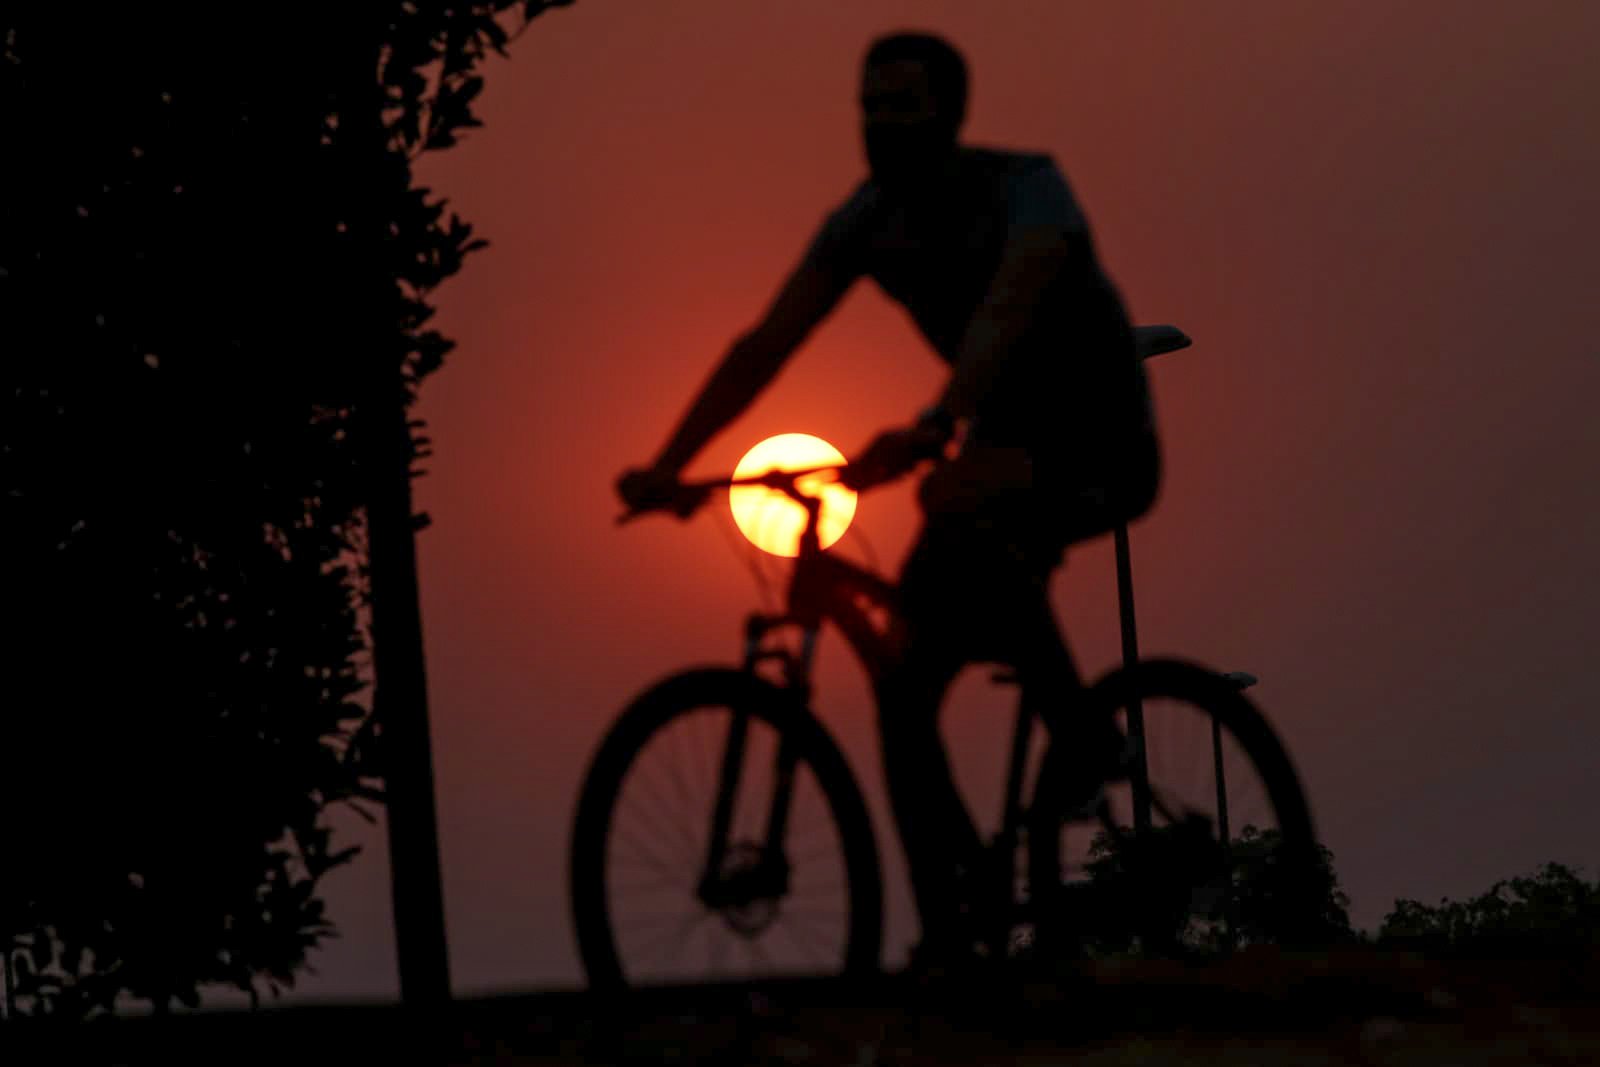 homem anda de bicicleta calor no DF brasilia